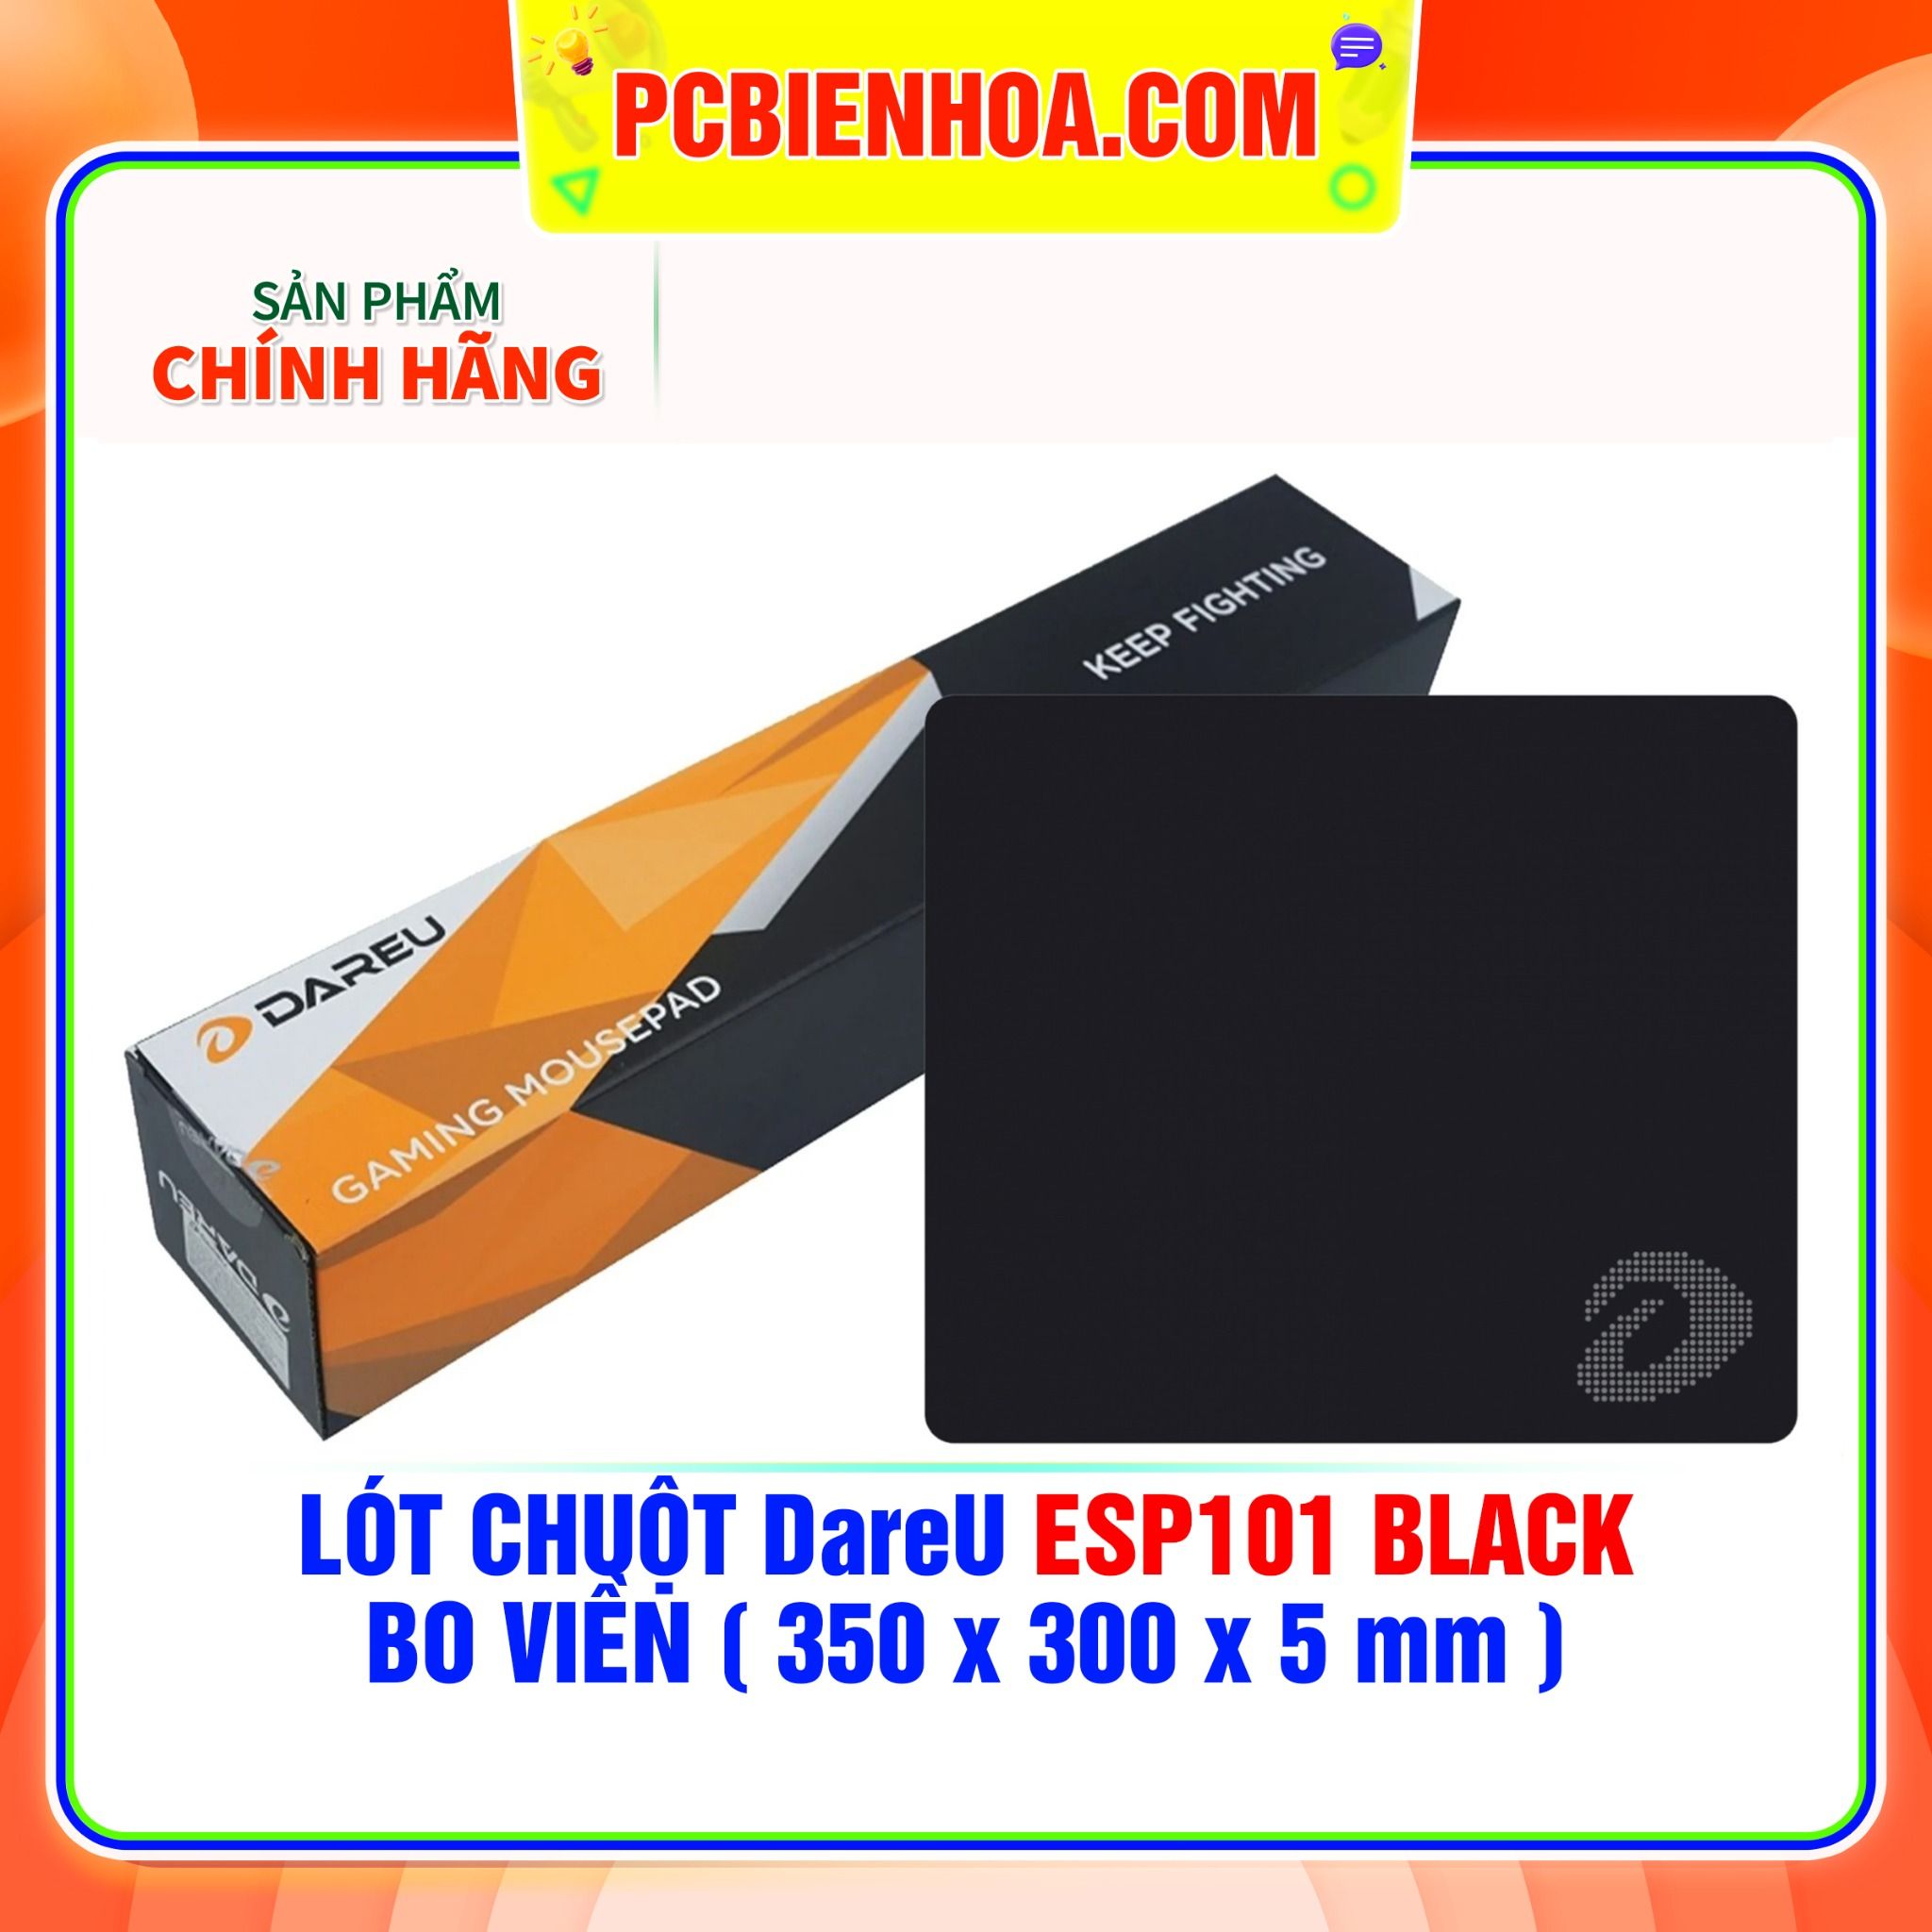  LÓT CHUỘT DareU ESP101 BLACK - BO VIỀN ( 350 x 300 x 5 mm ) 